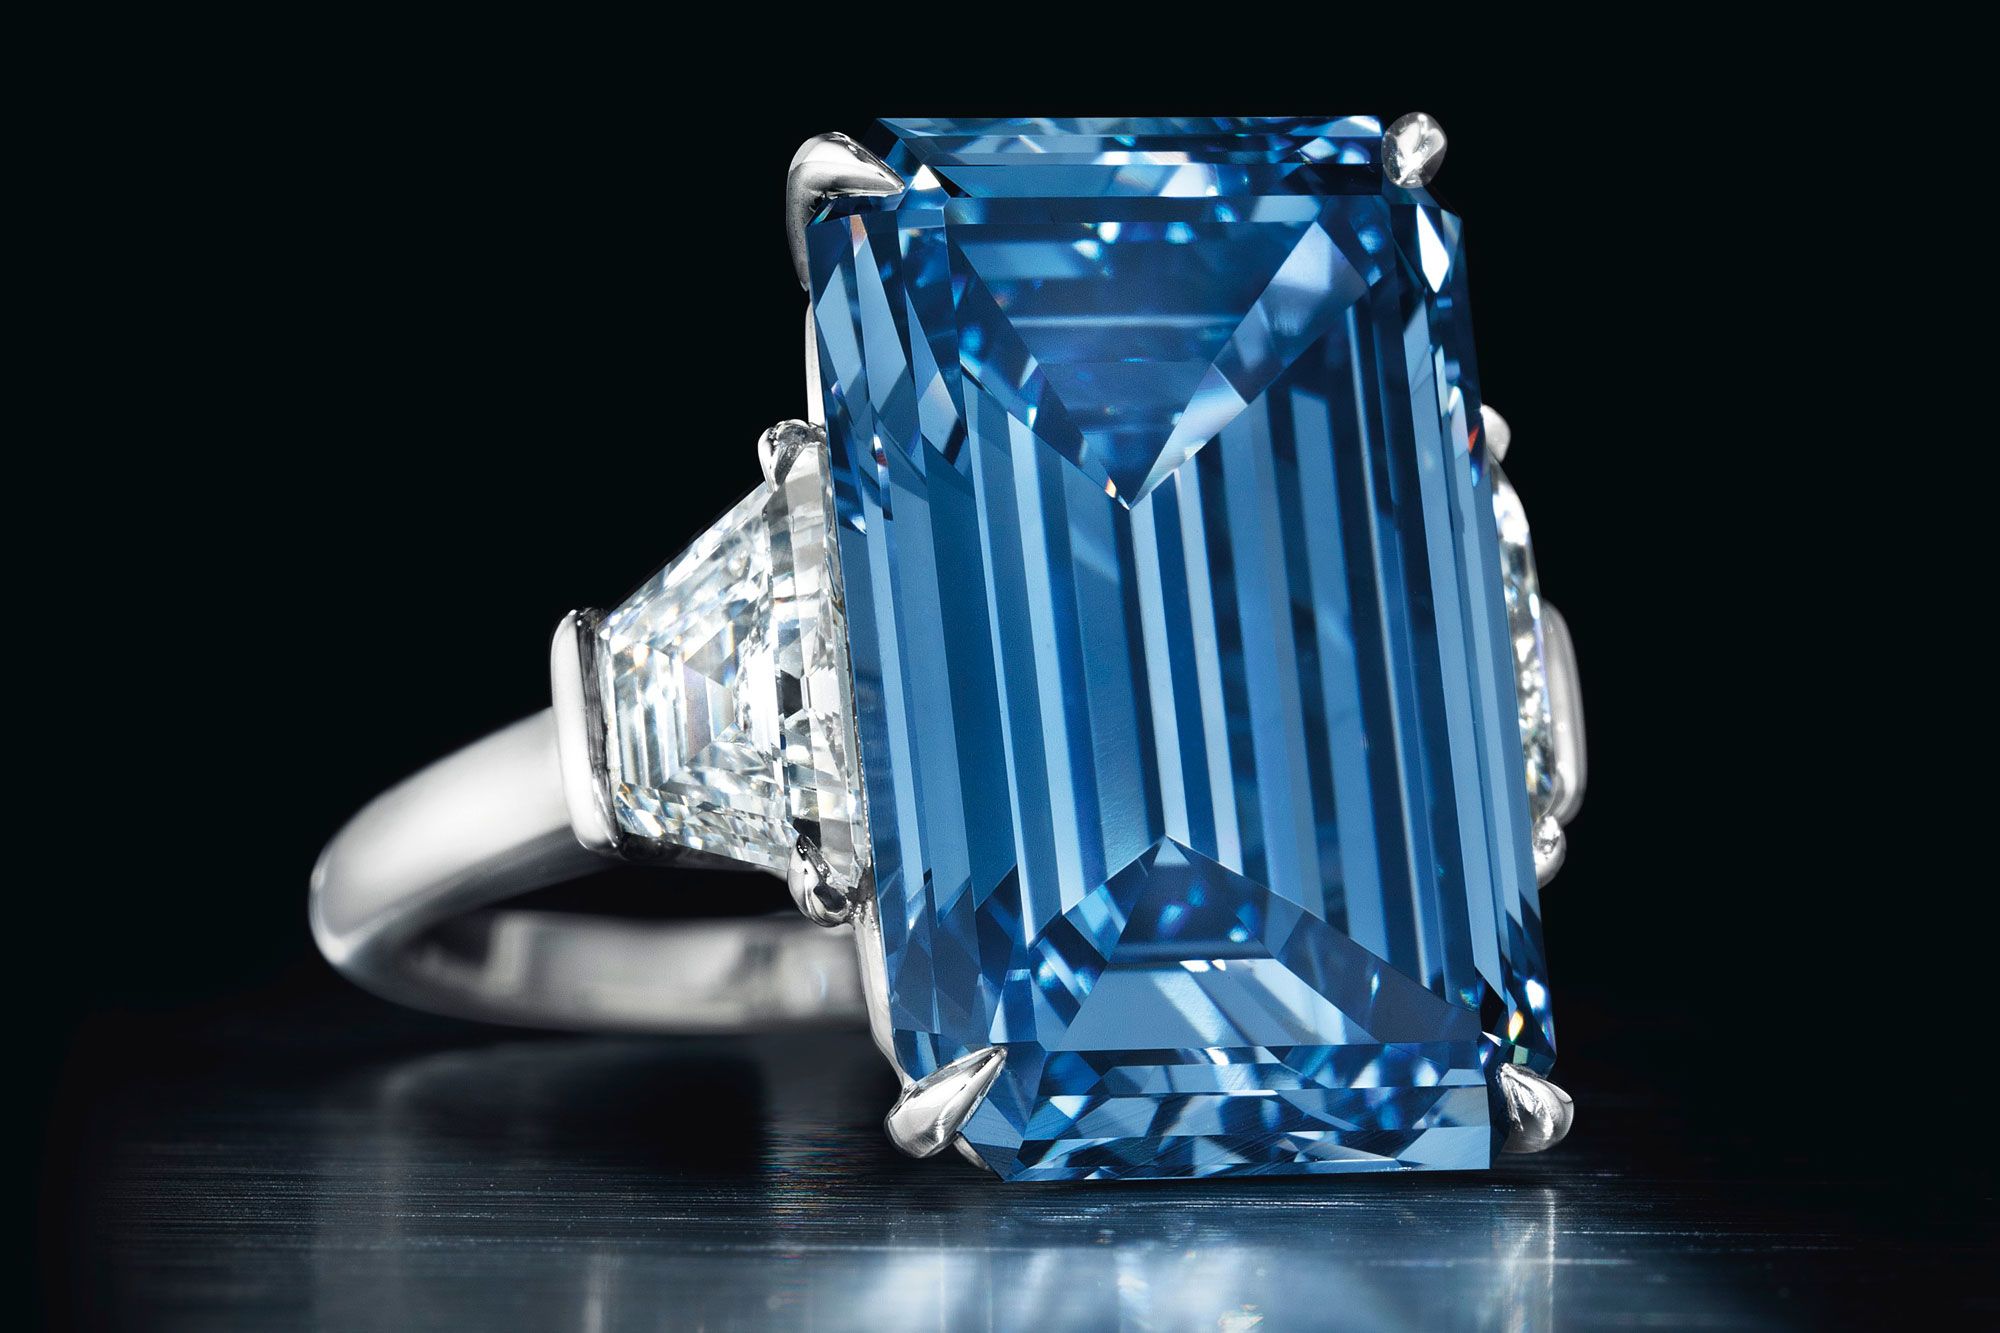 Chiêm ngưỡng những chiếc nhẫn kim cương đắt nhất thế giới: Giá trị liên thành, đẹp không tỳ vết, có tiền chưa chắc đã mua được